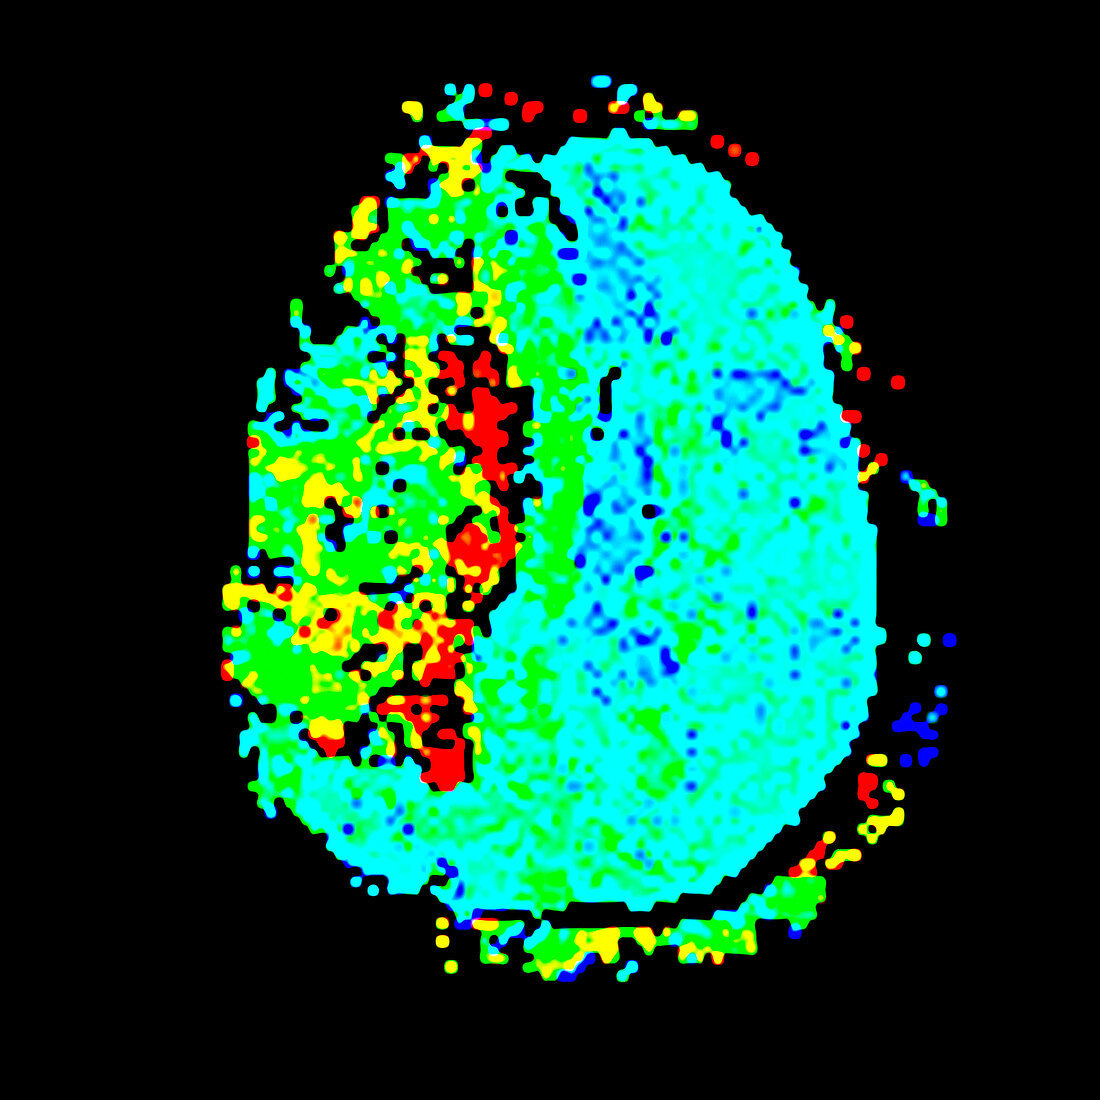 Stroke,fMRI scan